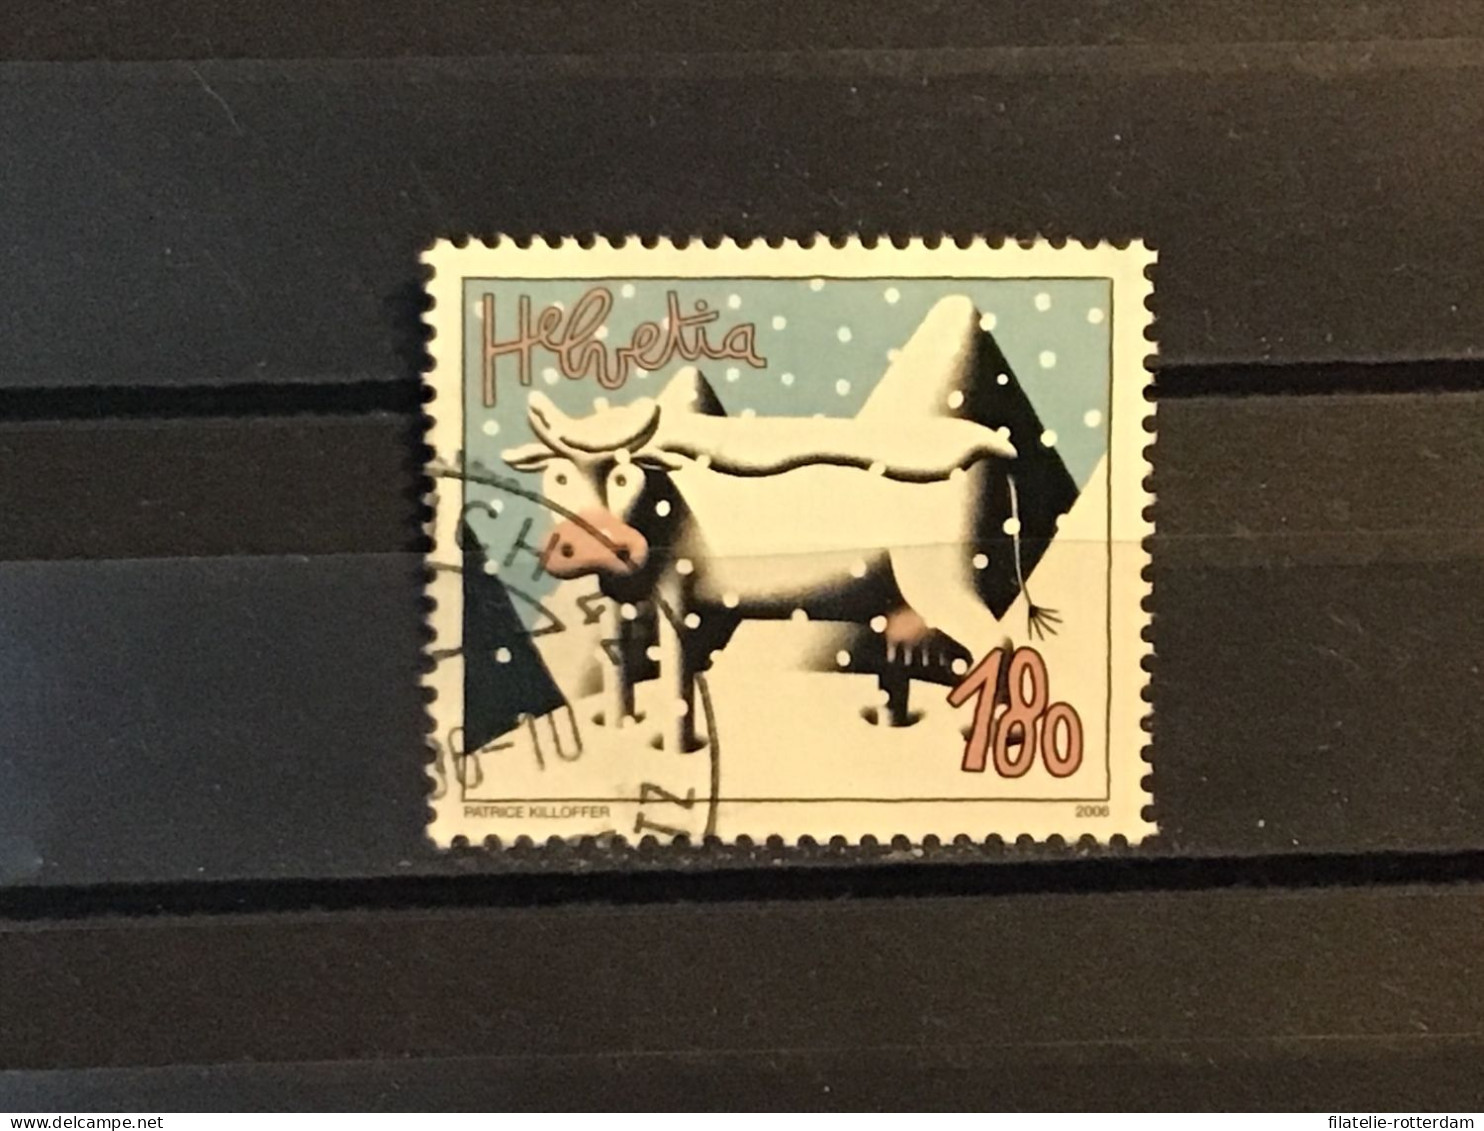 Switzerland / Zwitserland - Cow (180) 2006 - Usados